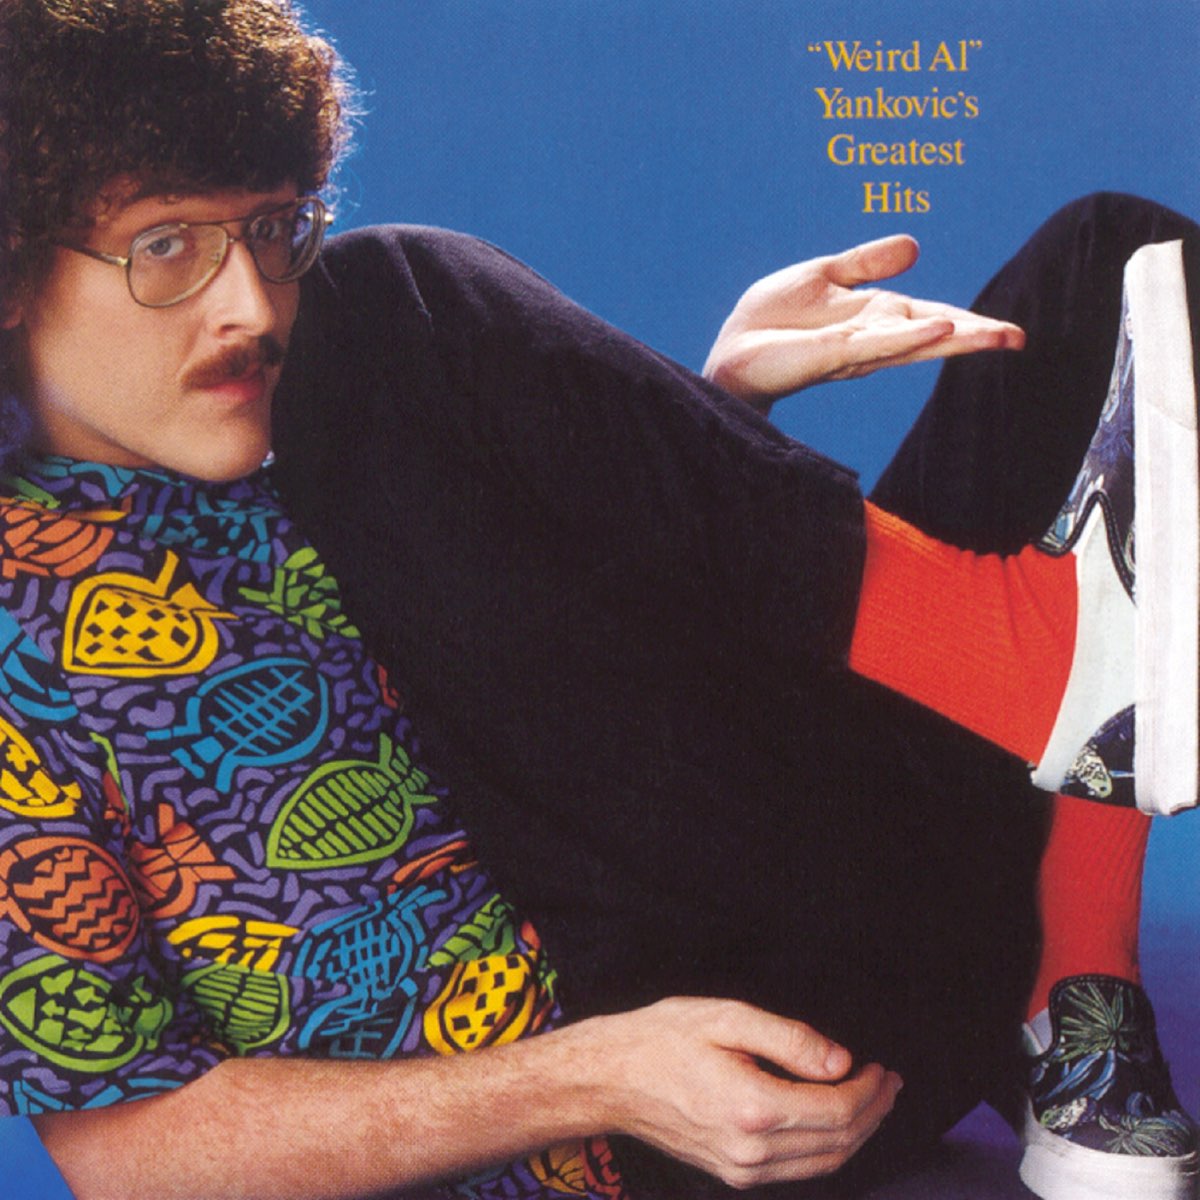 Weird Al" Yankovic's Greatest Hits de "Weird Al" Yankovic en Apple Music